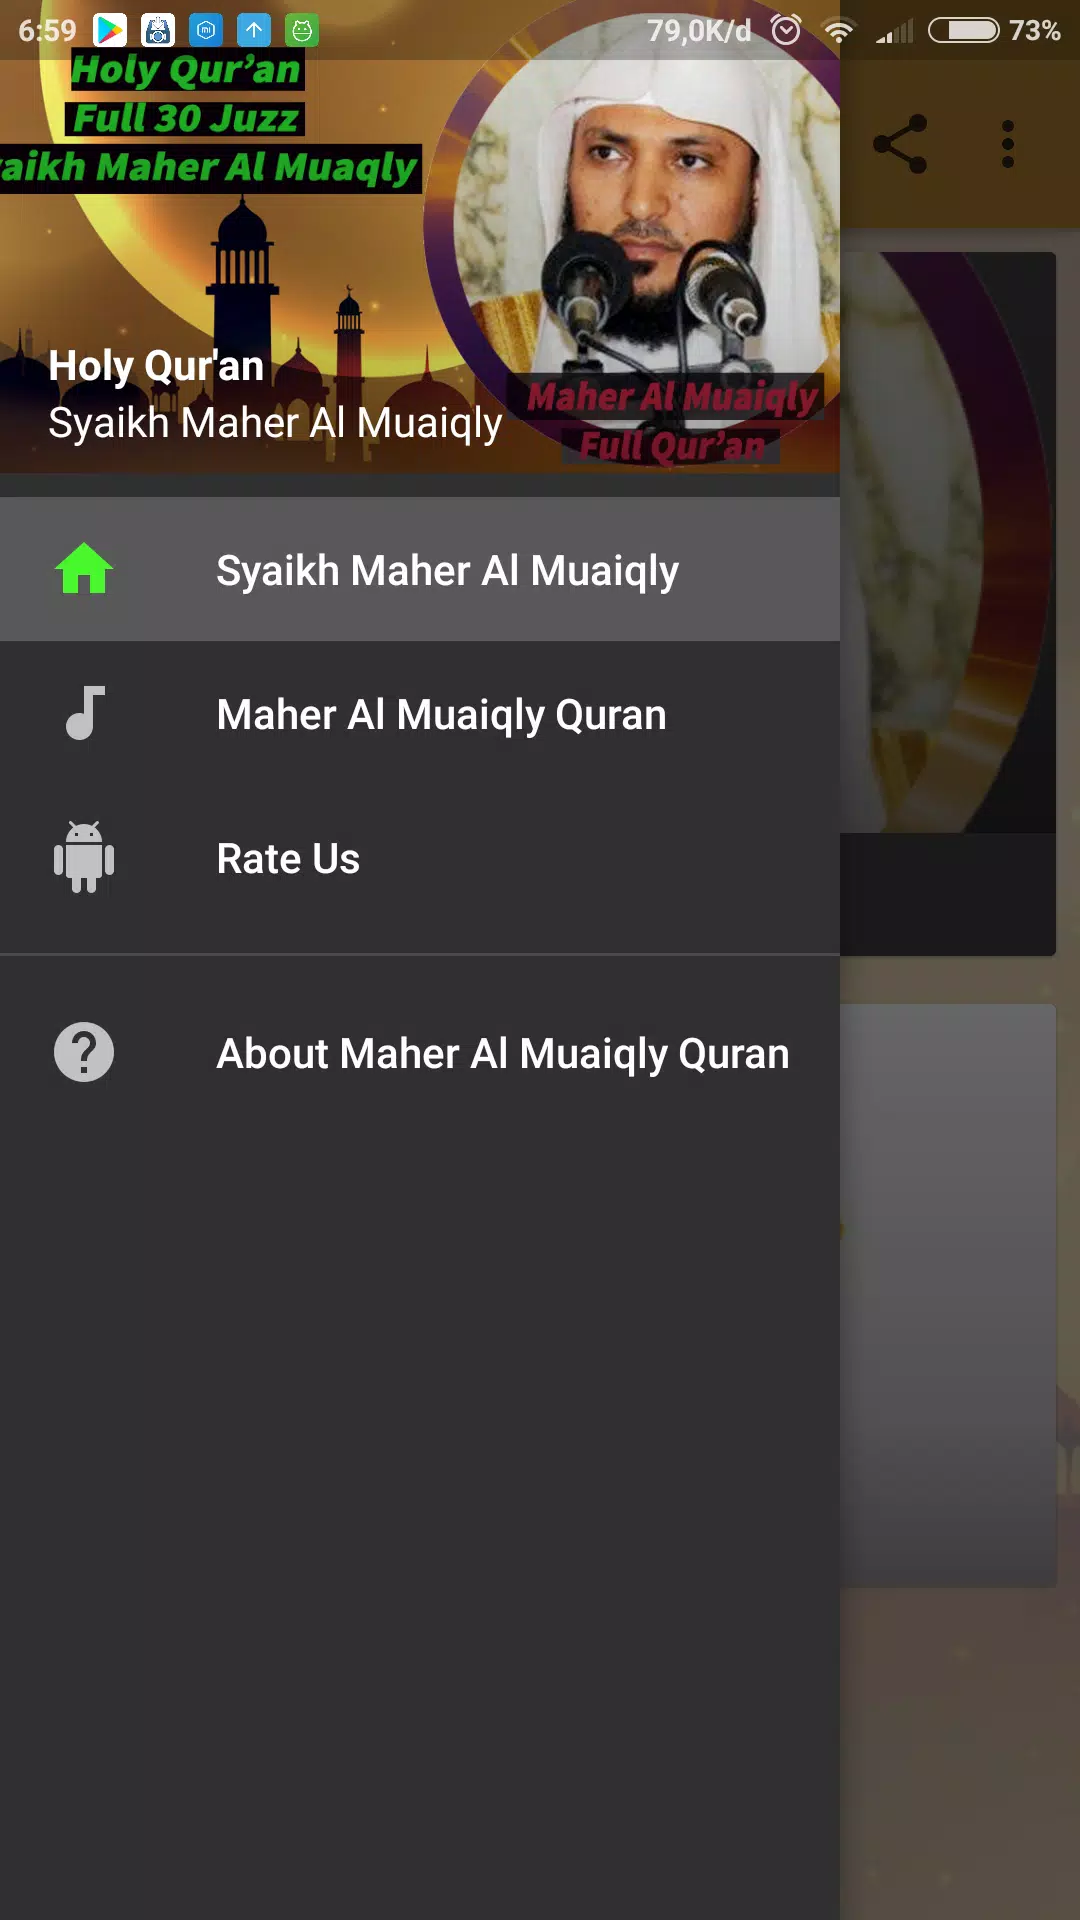 Full Quran Mp3 - Maher Al Muaiqly APK for Android Download